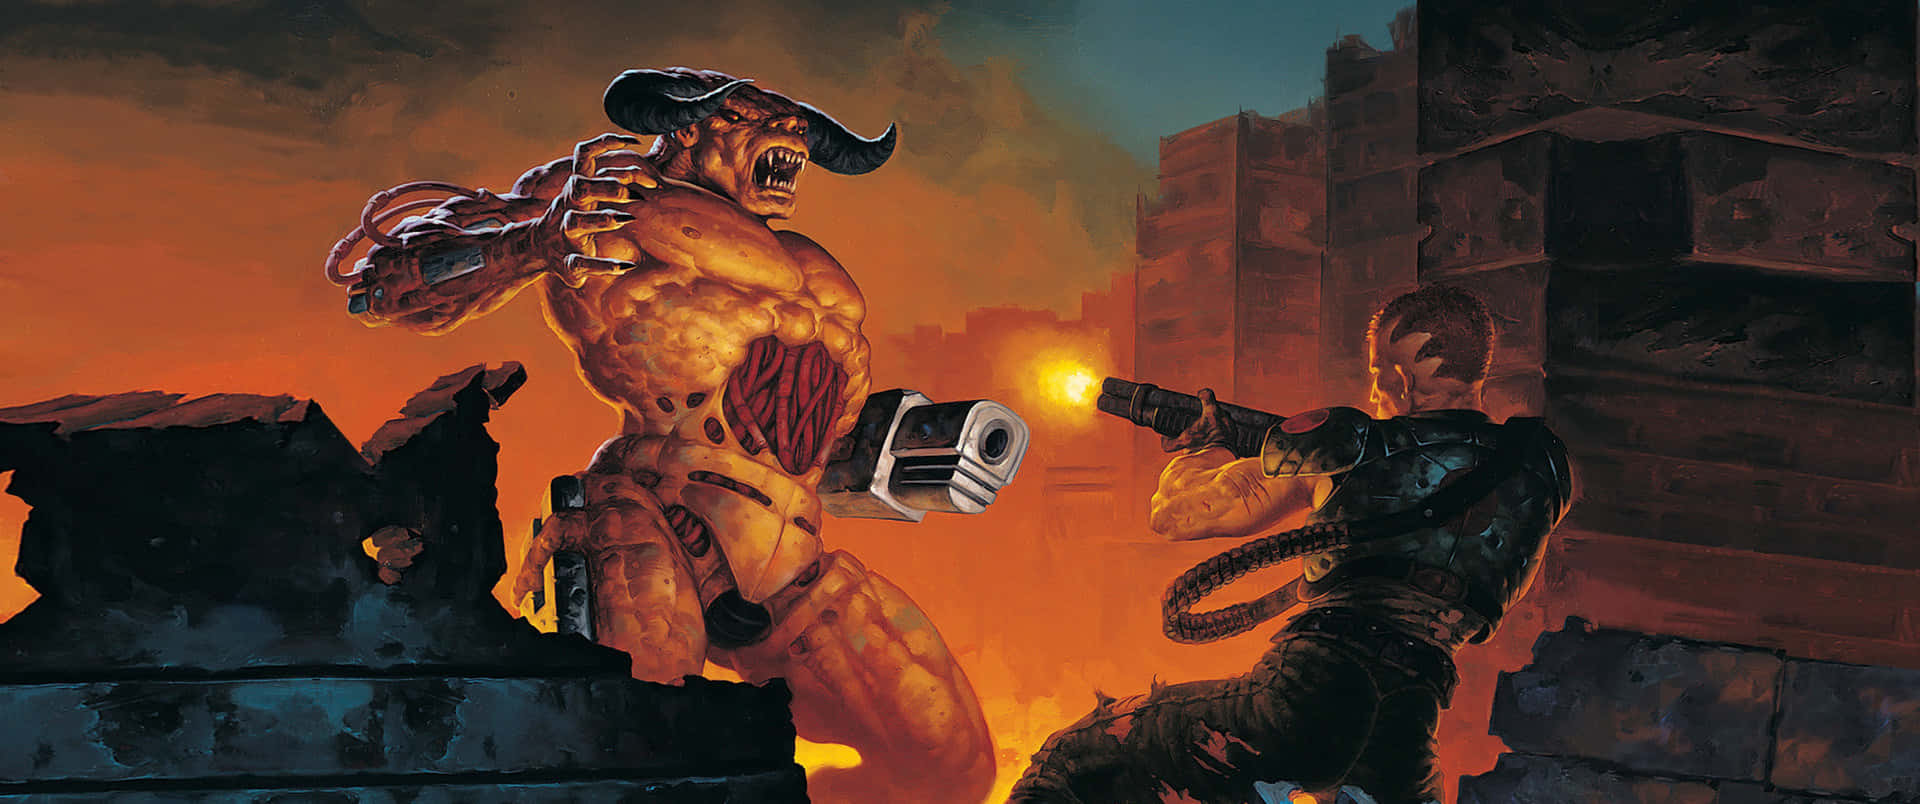 Doomguy And Tyrant 3440x1440p Video Game Doom Background